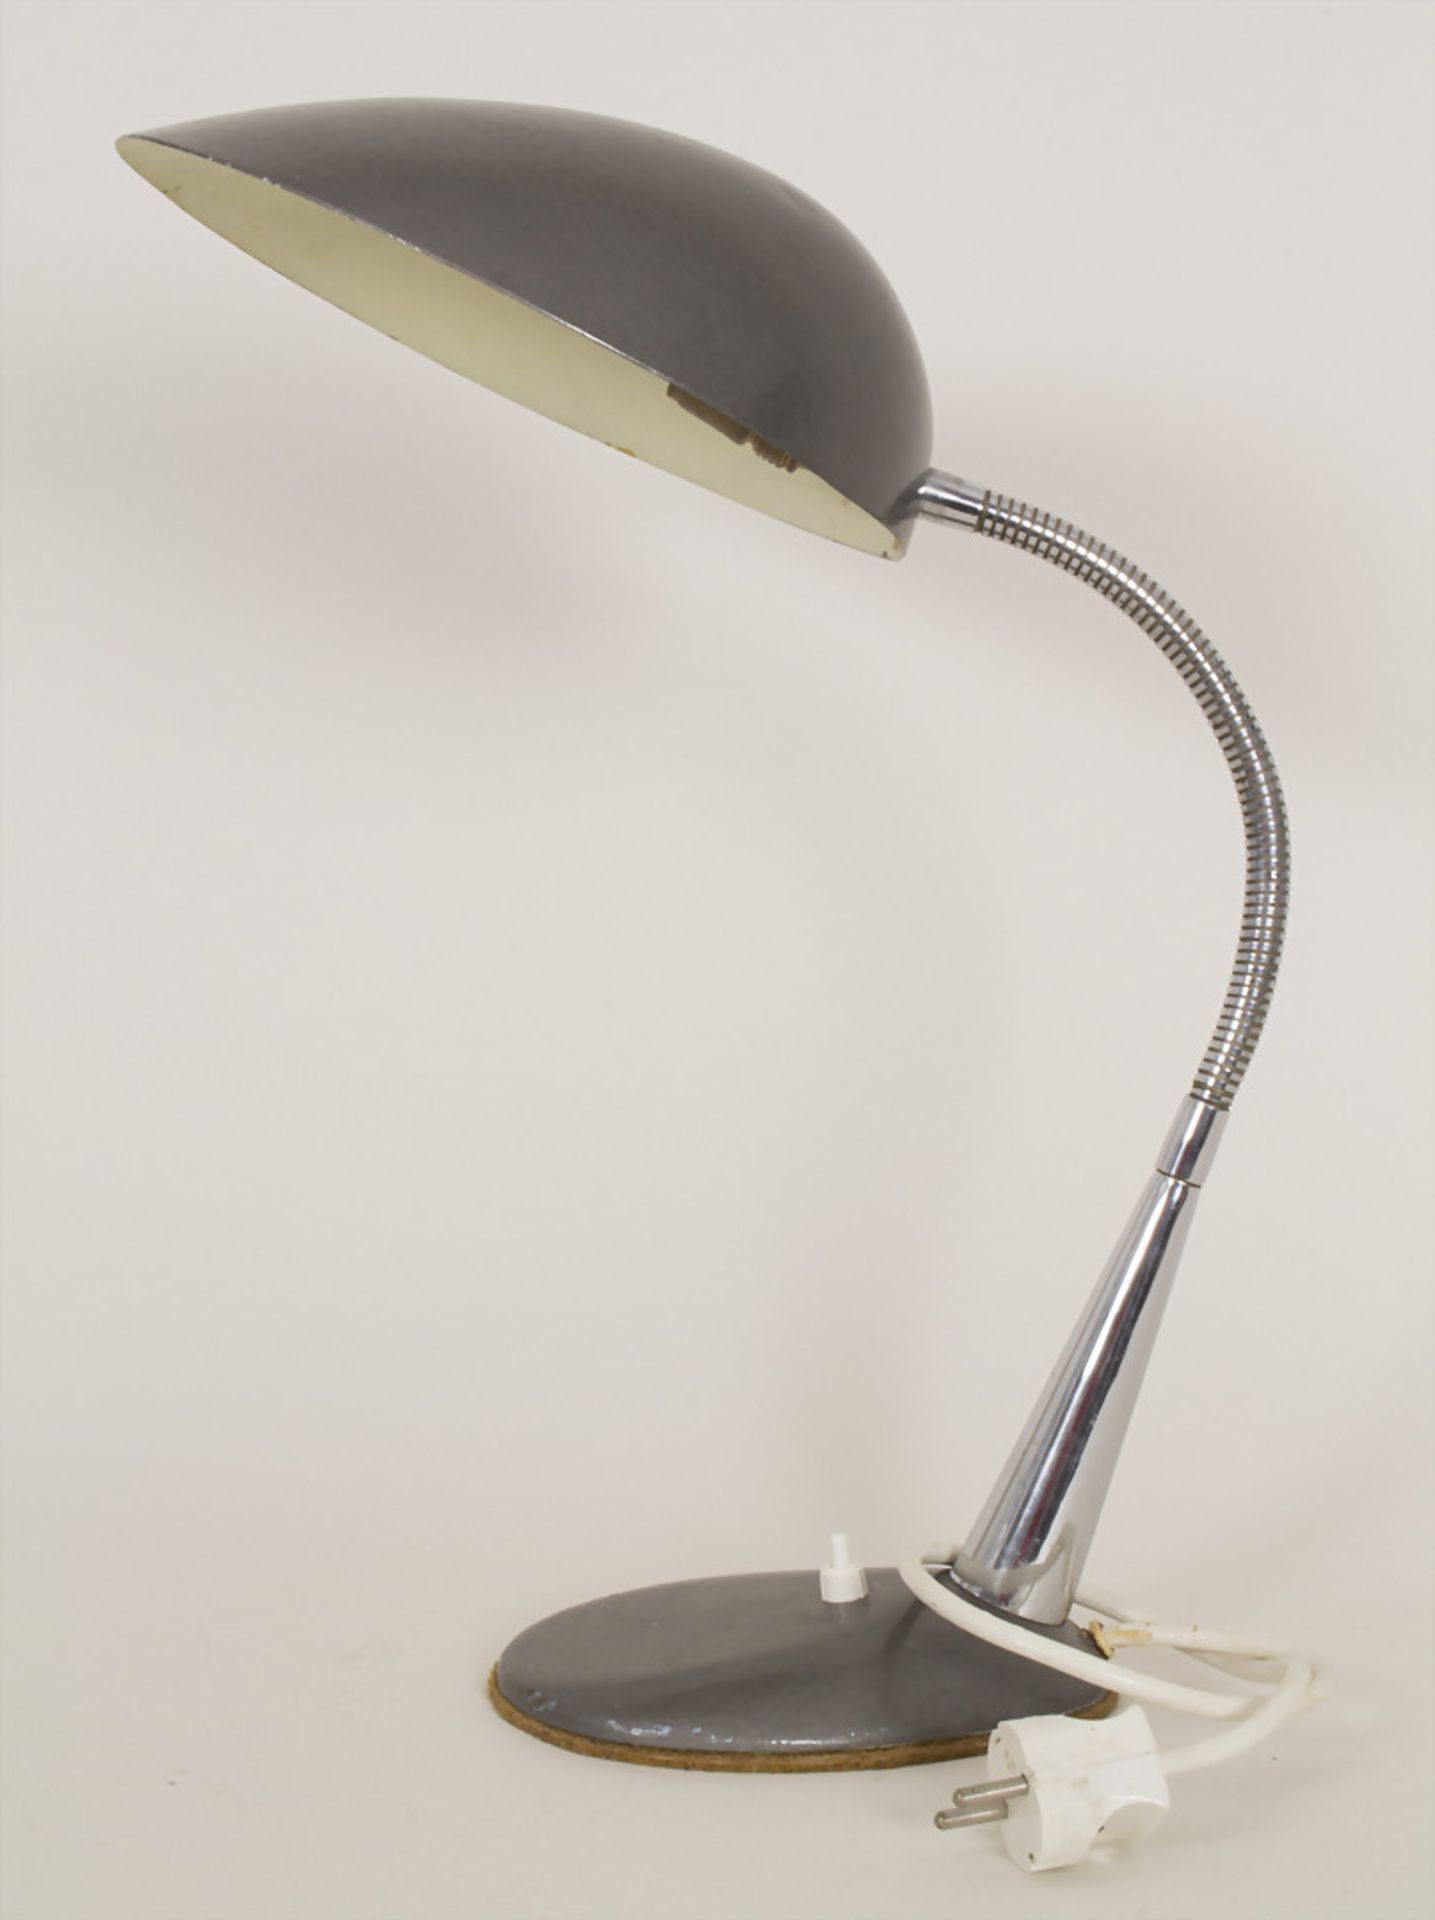 Schreibtischlampe / A desk lamp, um 1950Material: Schirm in Aluminium mit dunkelgrauem - Bild 2 aus 5